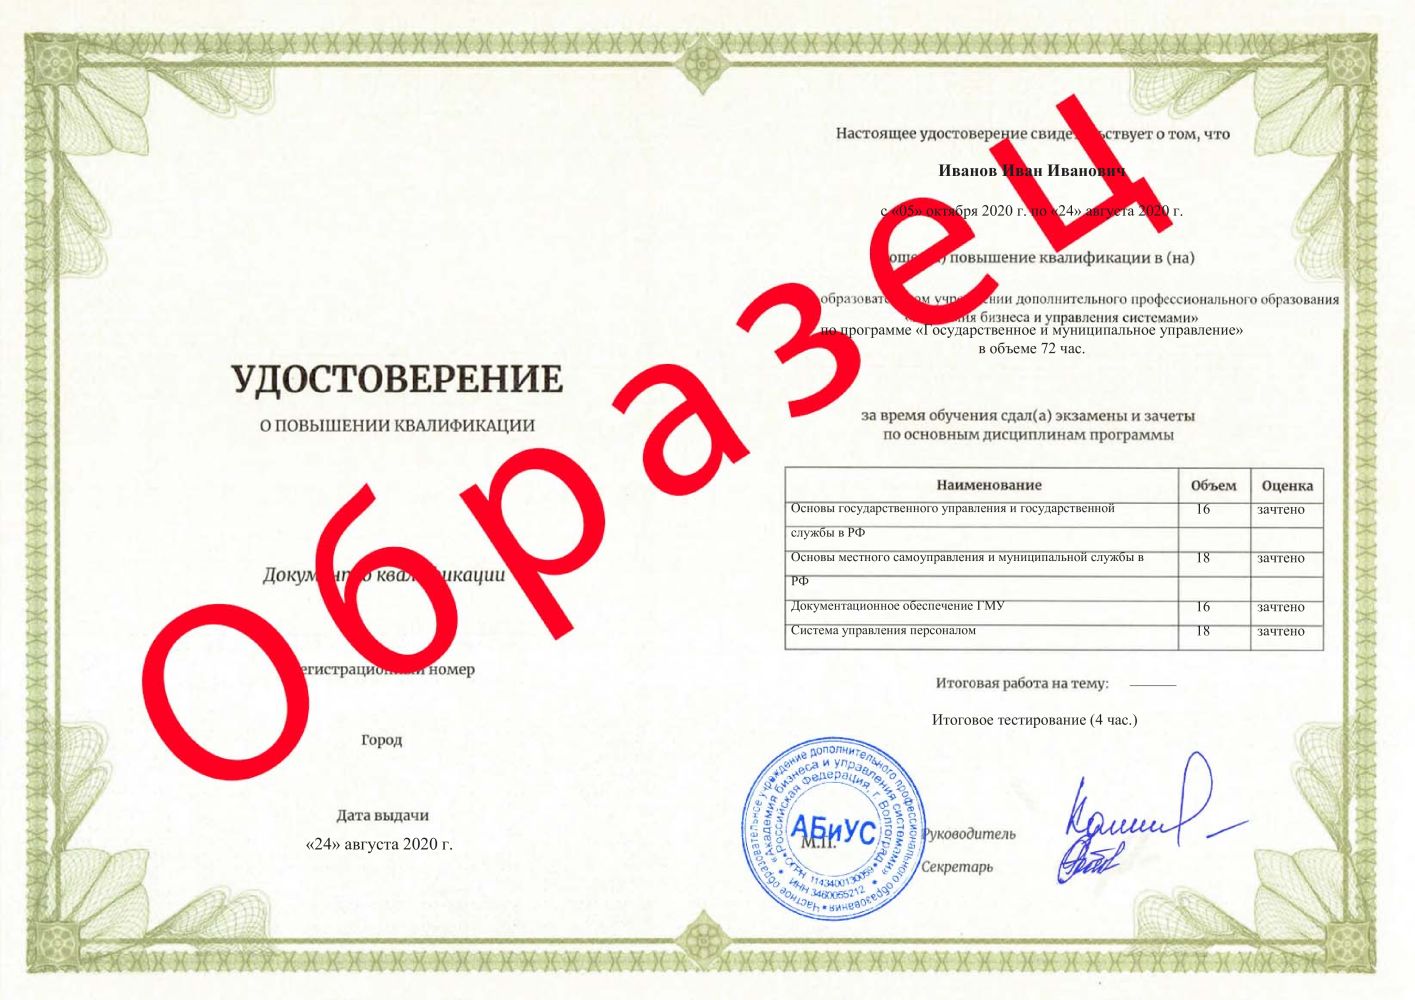 Удостоверение Государственное и муниципальное управление 72 часа 3625 руб.